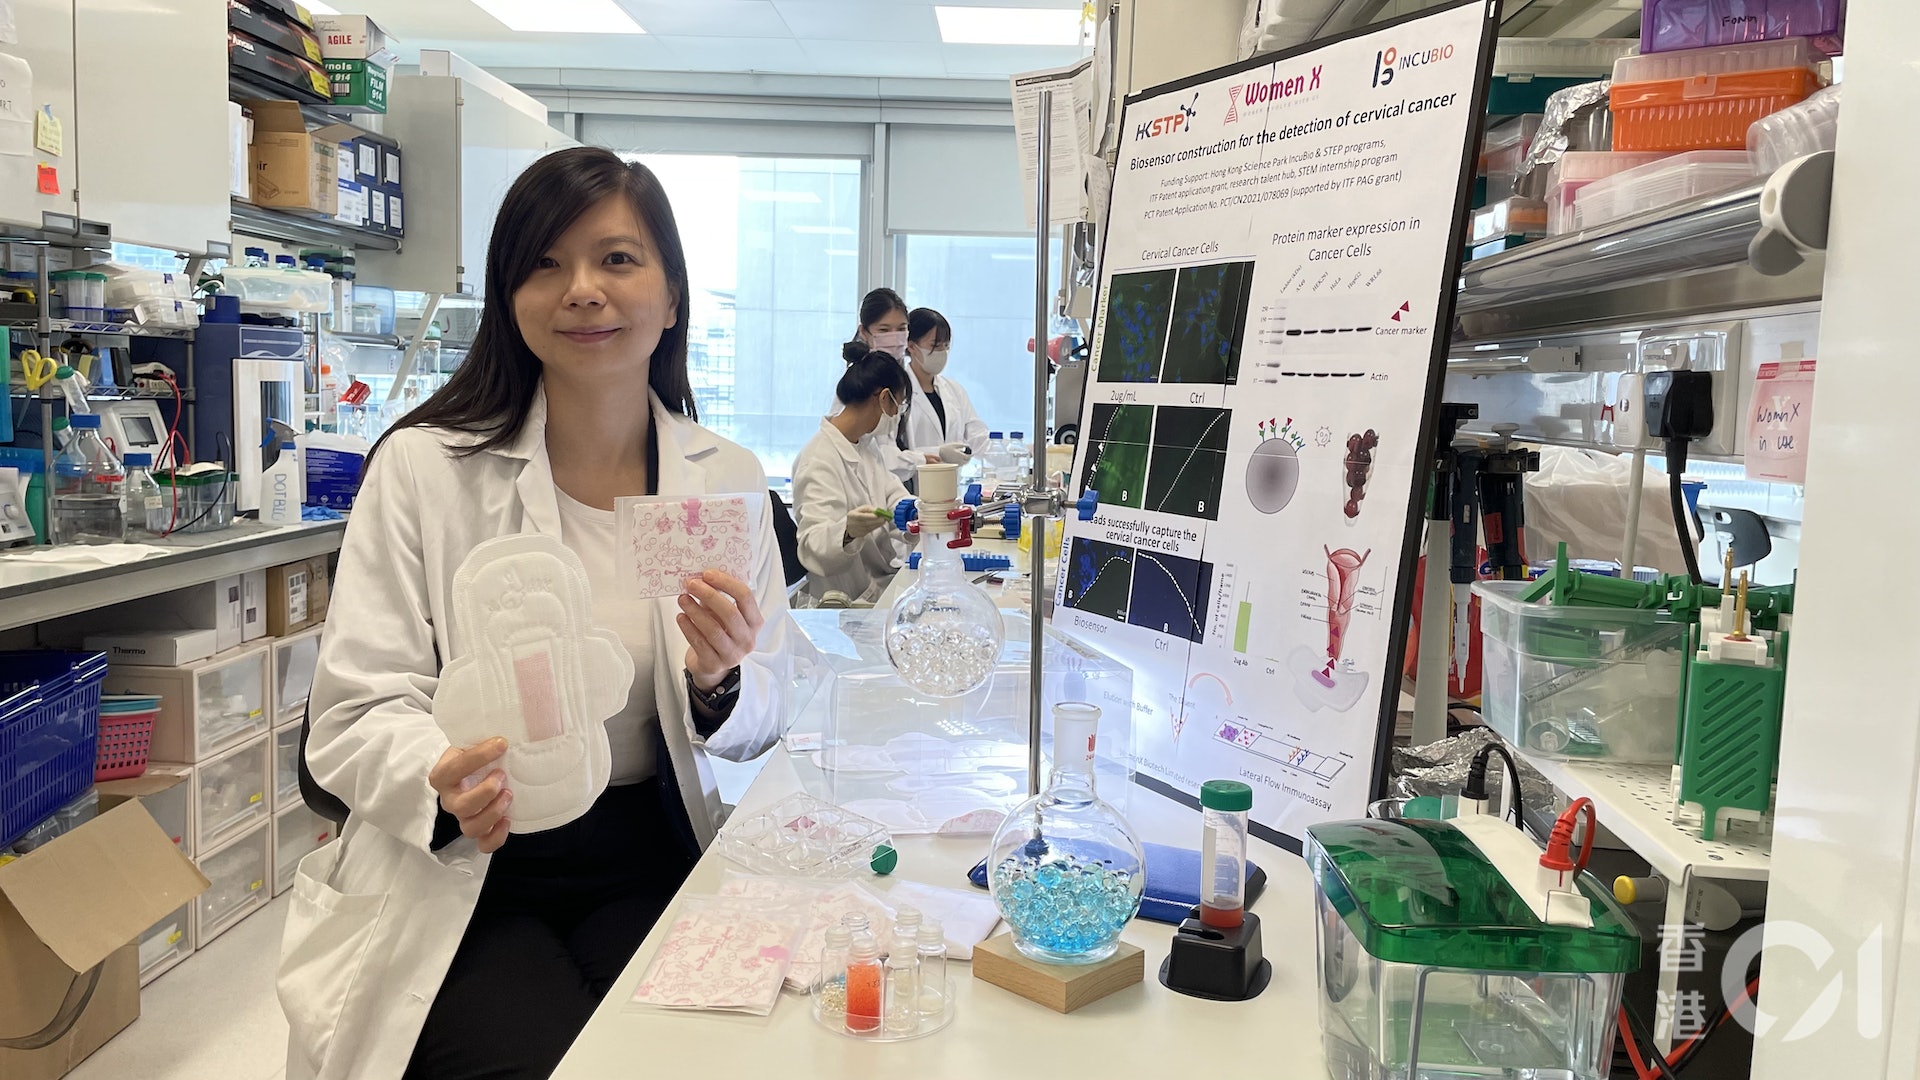 香港中文大學生物化學博士蔡佩樺從美國回港創辦「樺盟生物科技有限公司」（WomenX Biotech），開創一種非入侵性、利用女性月經經血簡易檢測宮頸癌的新技術。（劉夢婷攝）